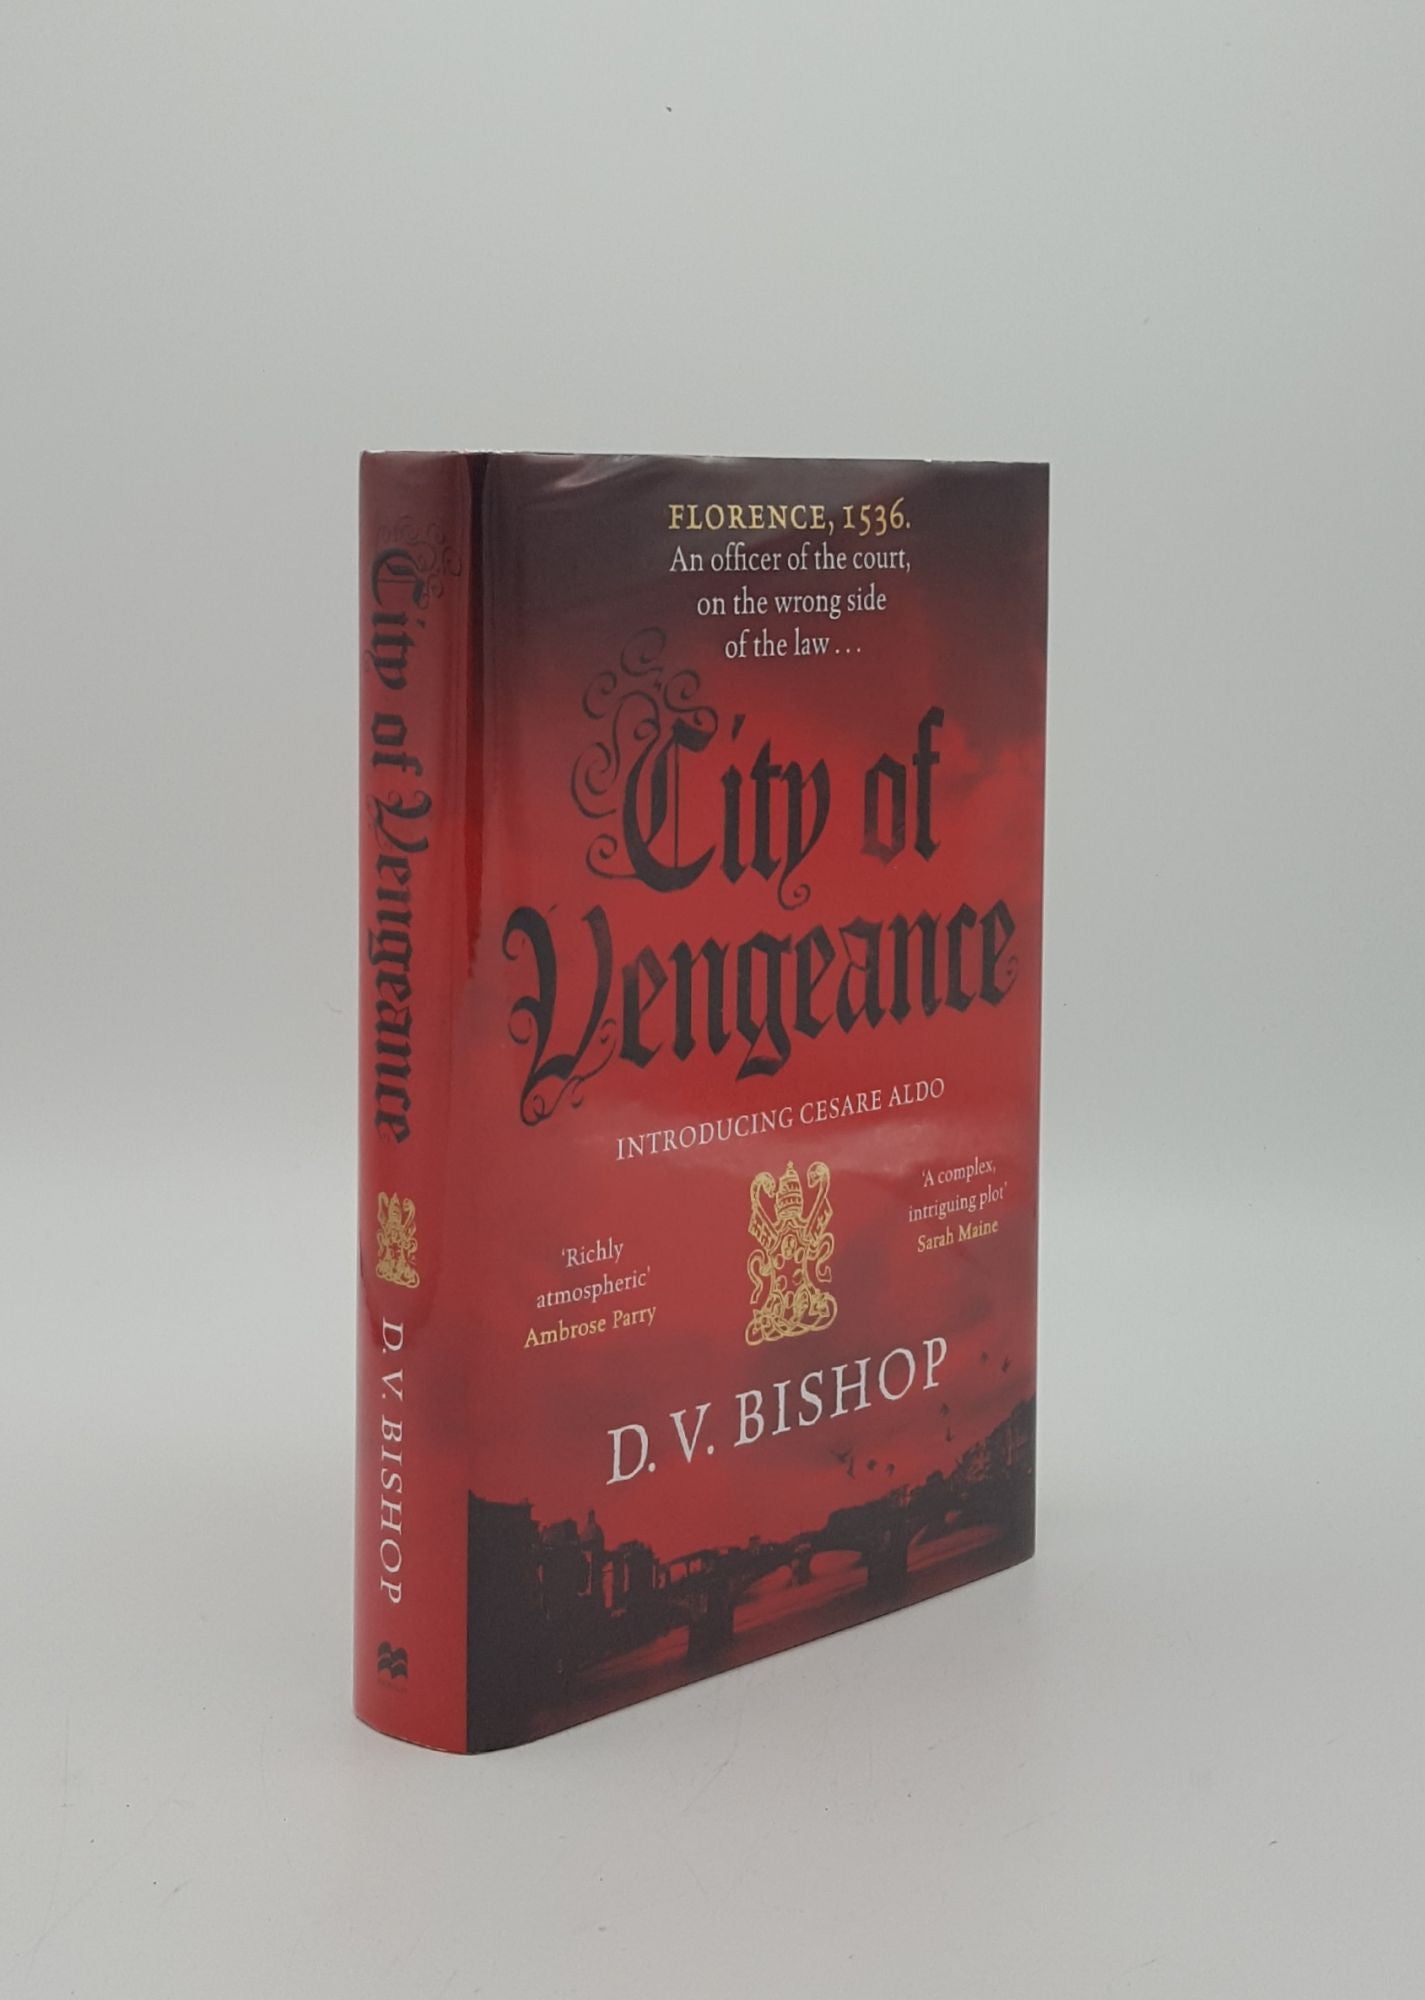 BISHOP D.V. - City of Vengeance